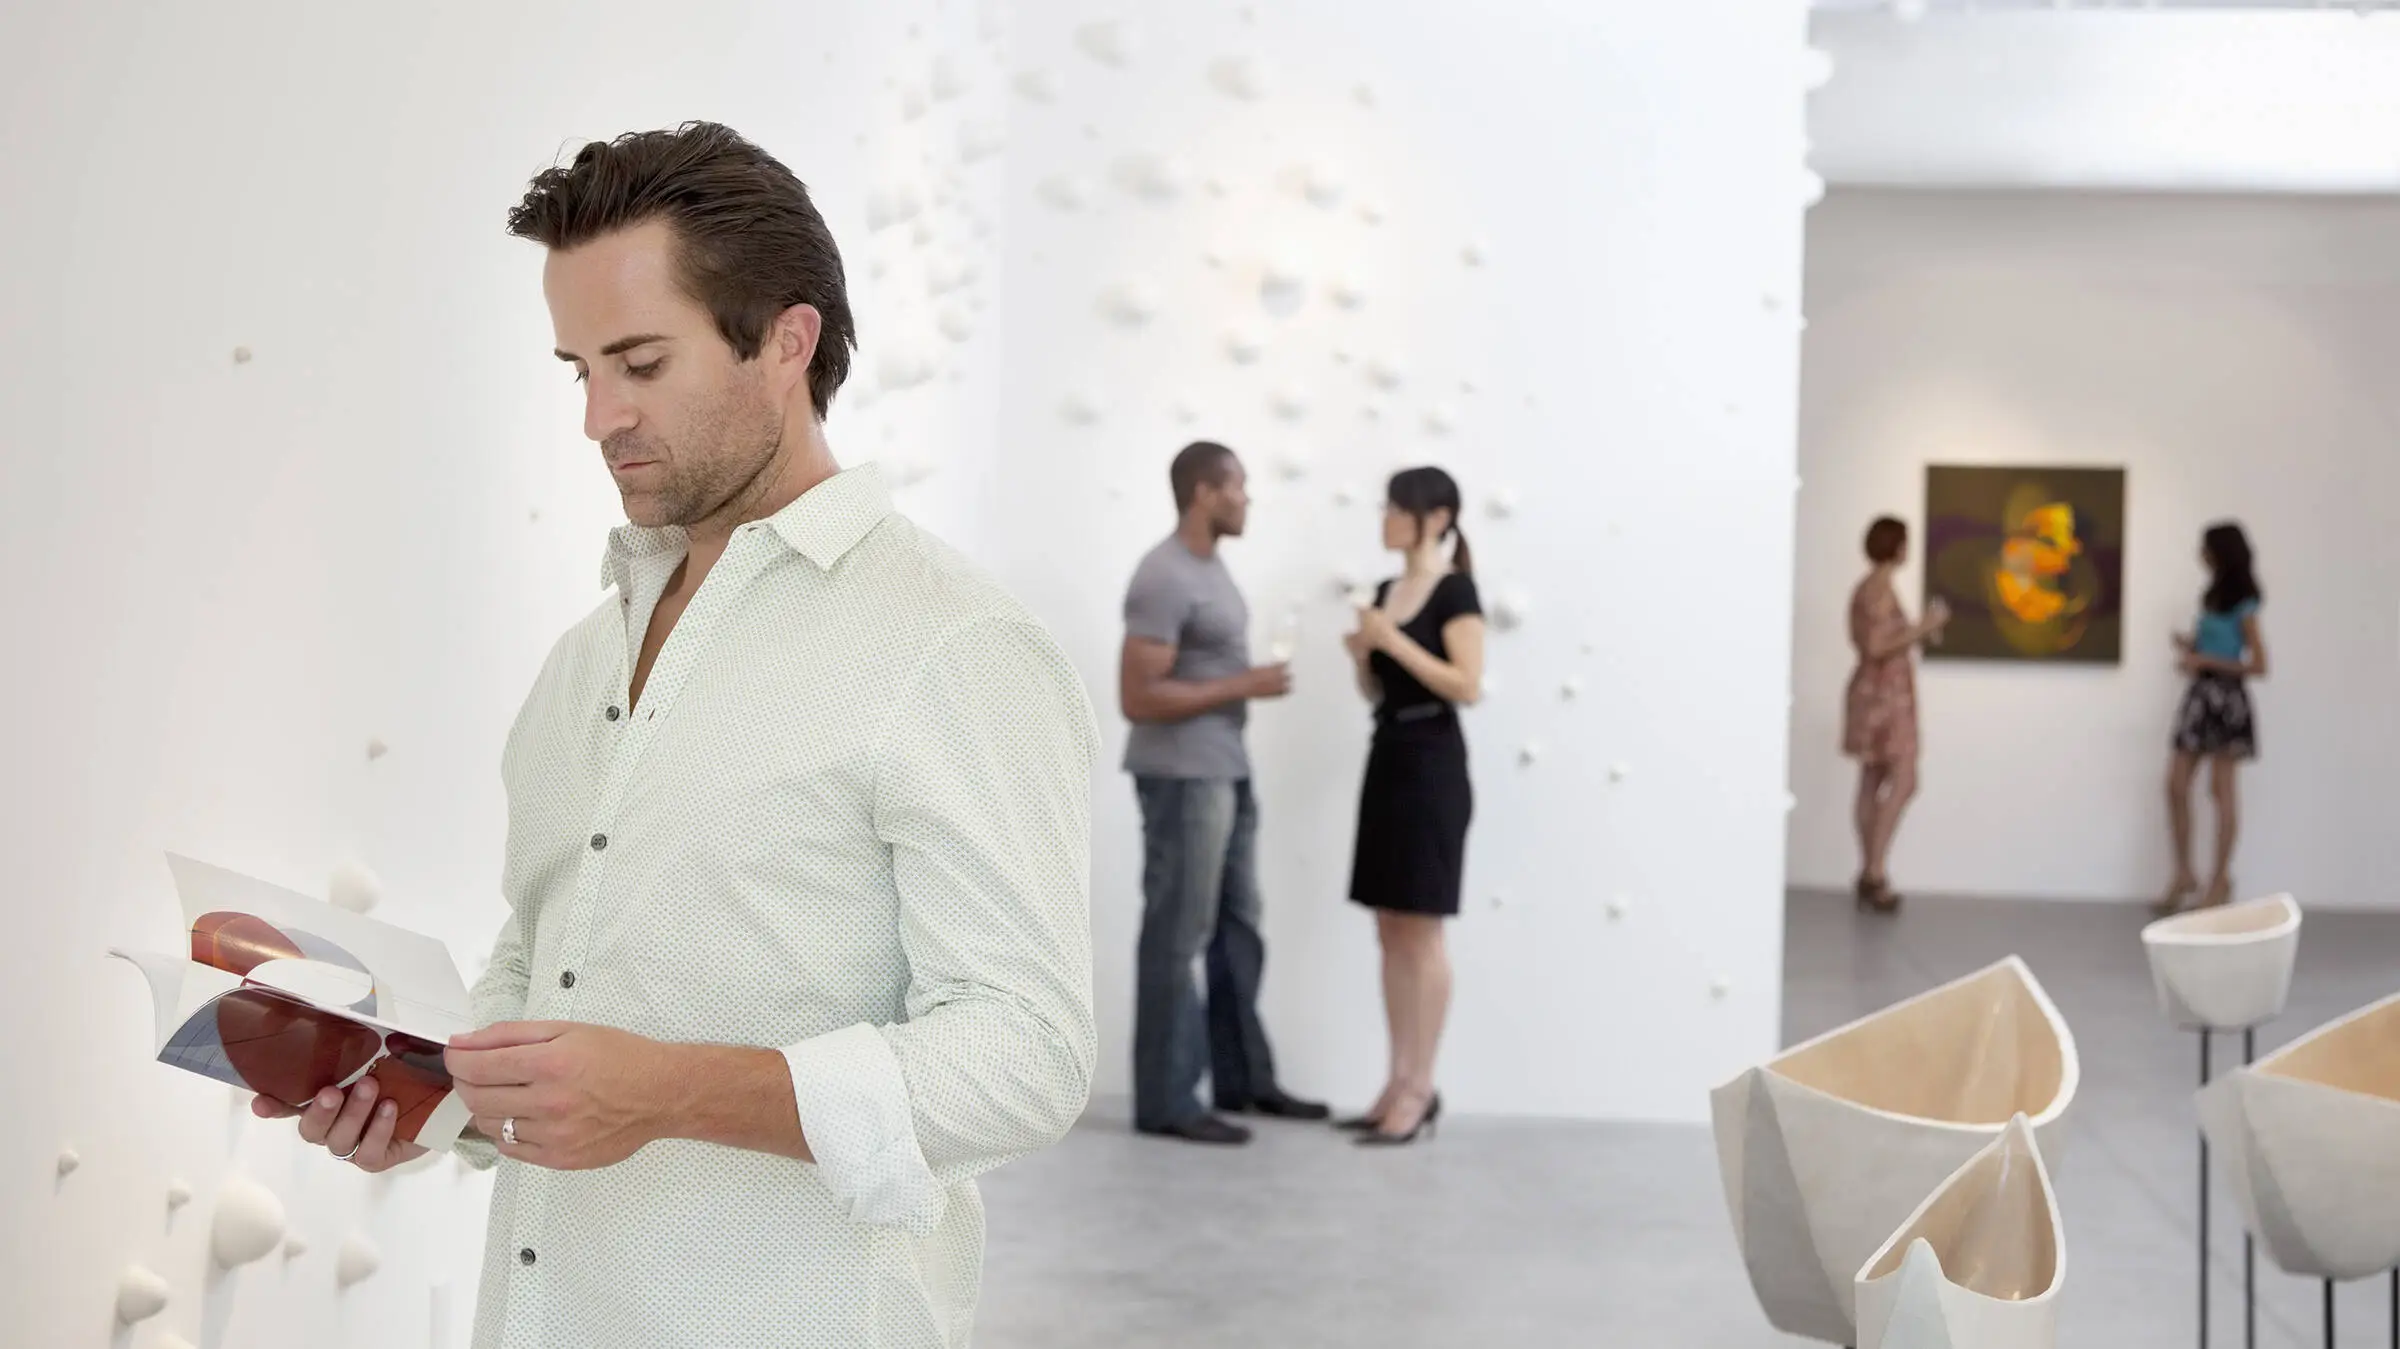 Un homme en chemise blanche regarde un prospectus dans le musée et se tient devant une sculpture.